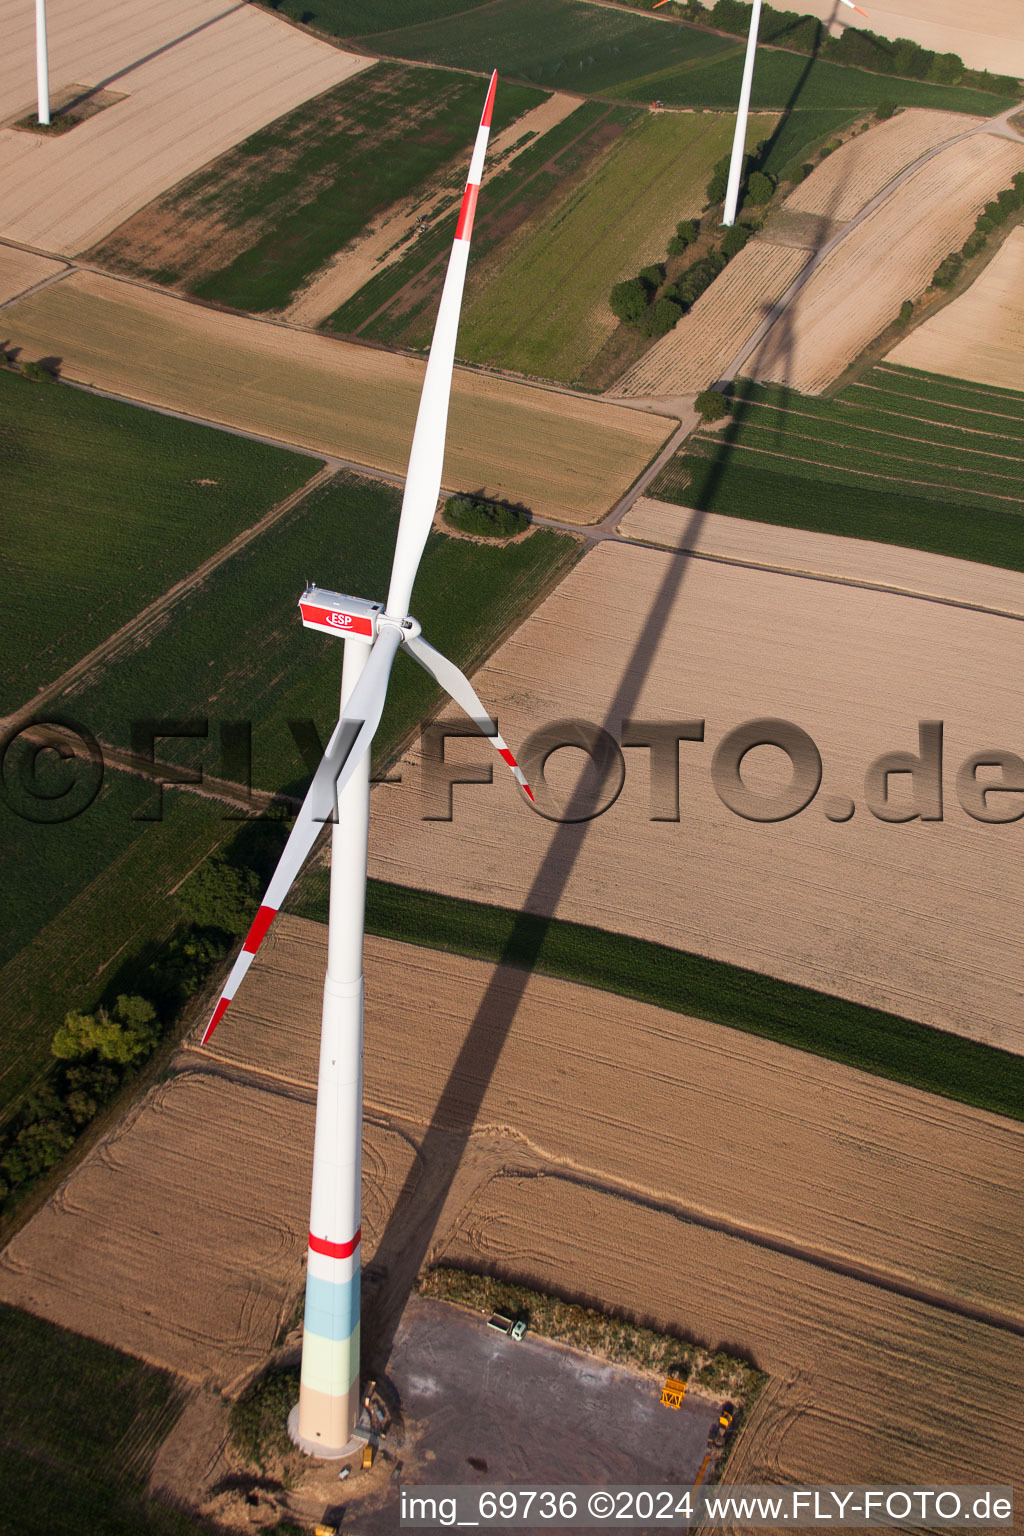 Construction de parc éolien à Offenbach an der Queich dans le département Rhénanie-Palatinat, Allemagne vu d'un drone